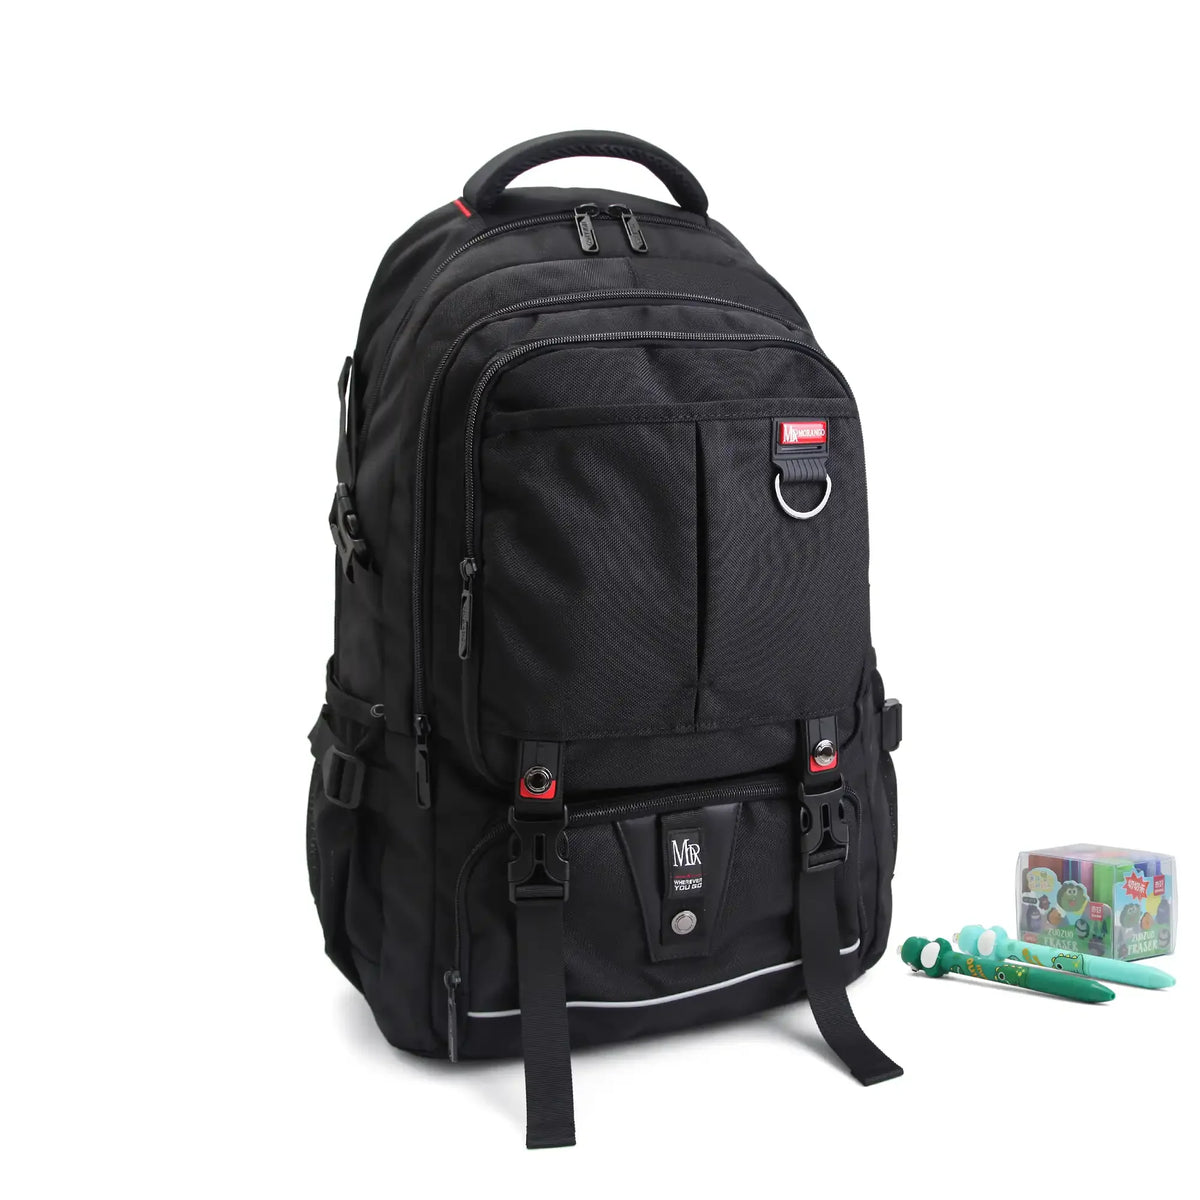 Adjustable Strap Backpack for Men